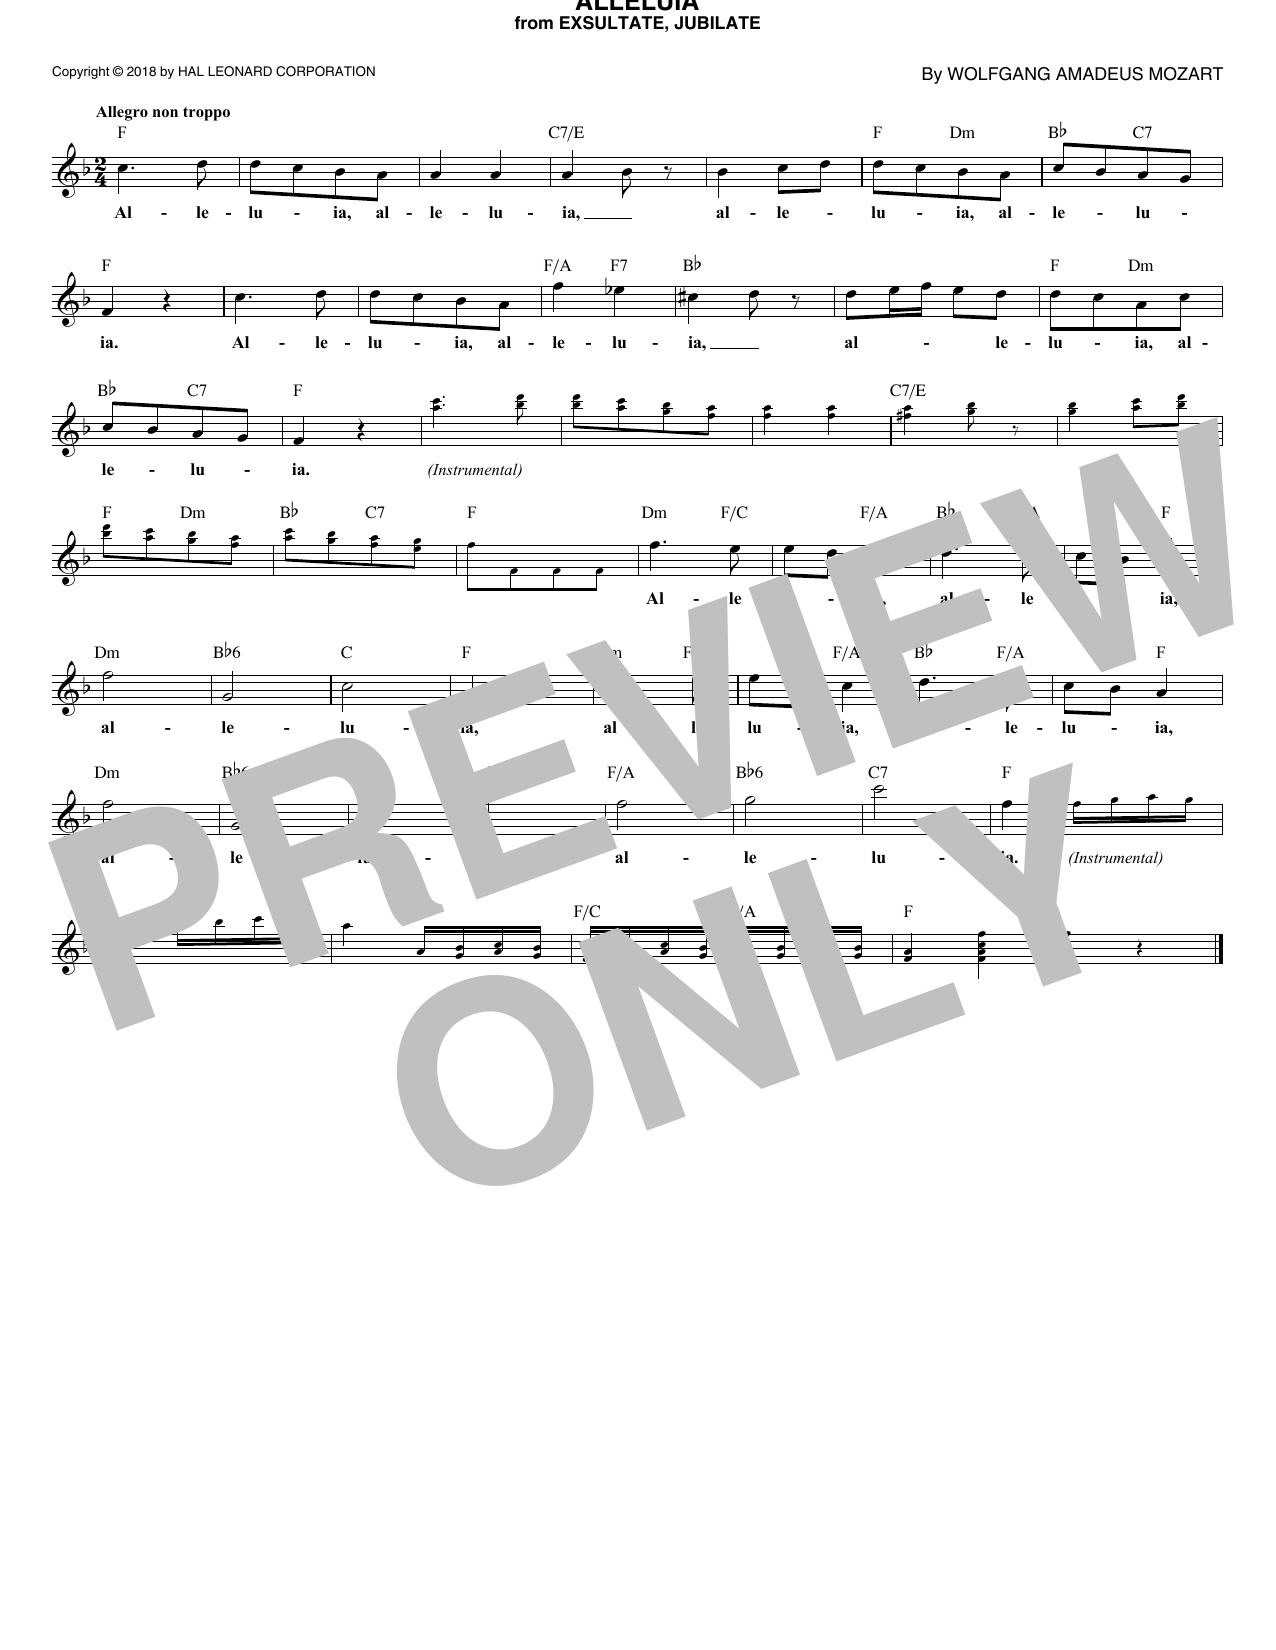 Download Wolfgang Amadeus Mozart Alleluia, K. 165 Sheet Music